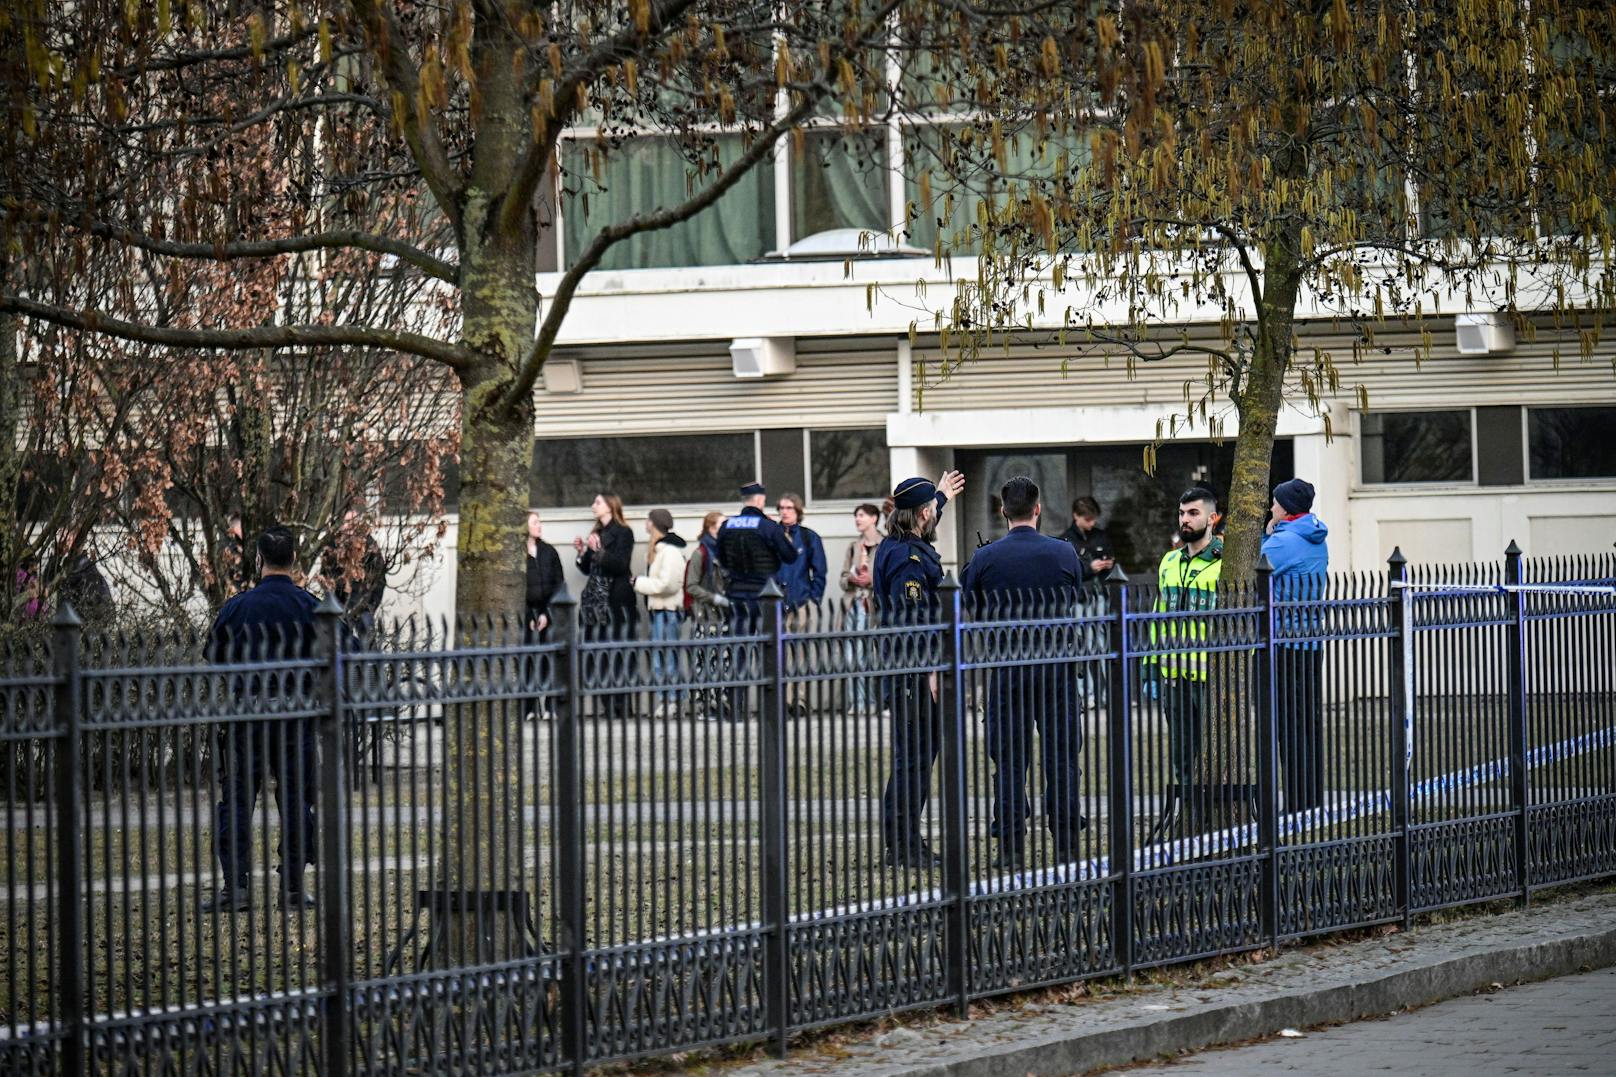 Bilder des Polizeieinsatzes nach einem <a target="_blank" data-li-document-ref="100197138" href="https://www.heute.at/g/-100197138">Amoklauf an einem Gymnasium im schwedischen Malmö</a> am 21. März 2022.